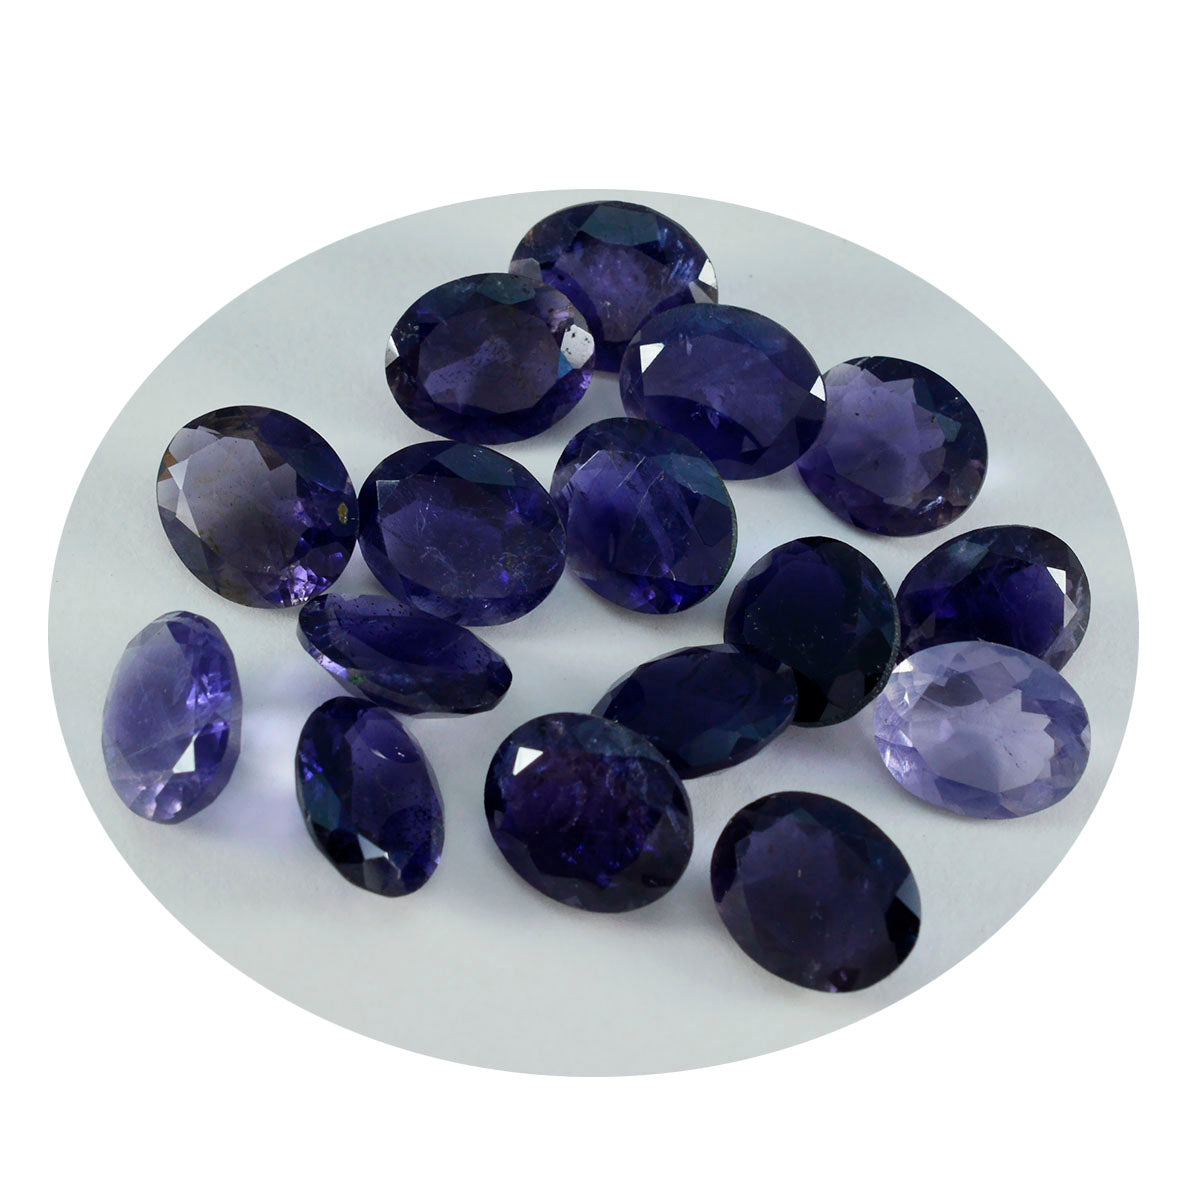 Riyogems 1 Stück blauer Iolith, facettiert, 6 x 8 mm, ovale Form, süßer Qualitätsstein